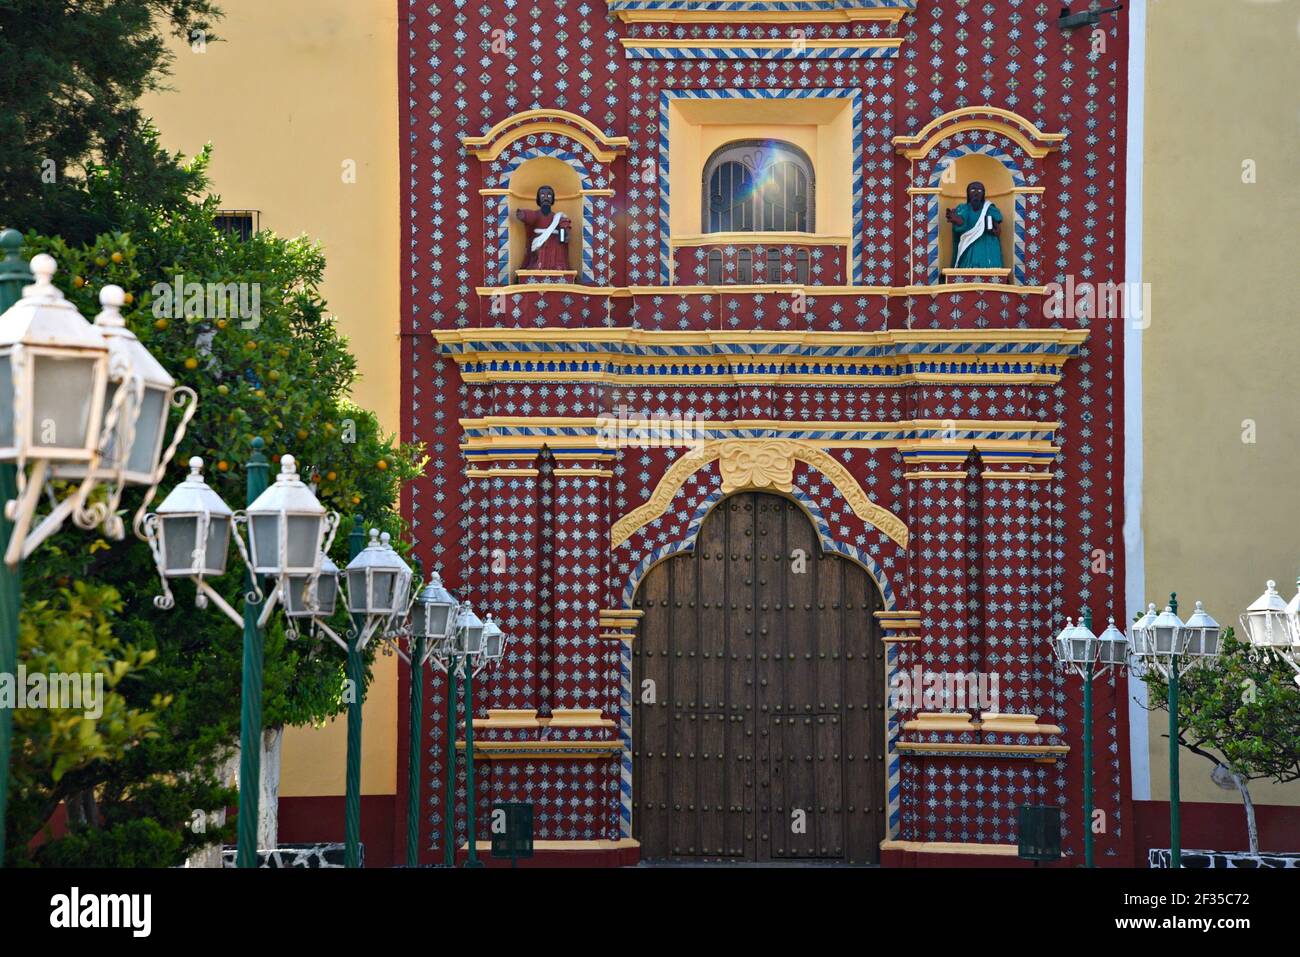 Talavera tile and ochre stucco facade view of the ancient Baroque church Santa María Tonantzintla in Cholula, Puebla Mexico. Stock Photo